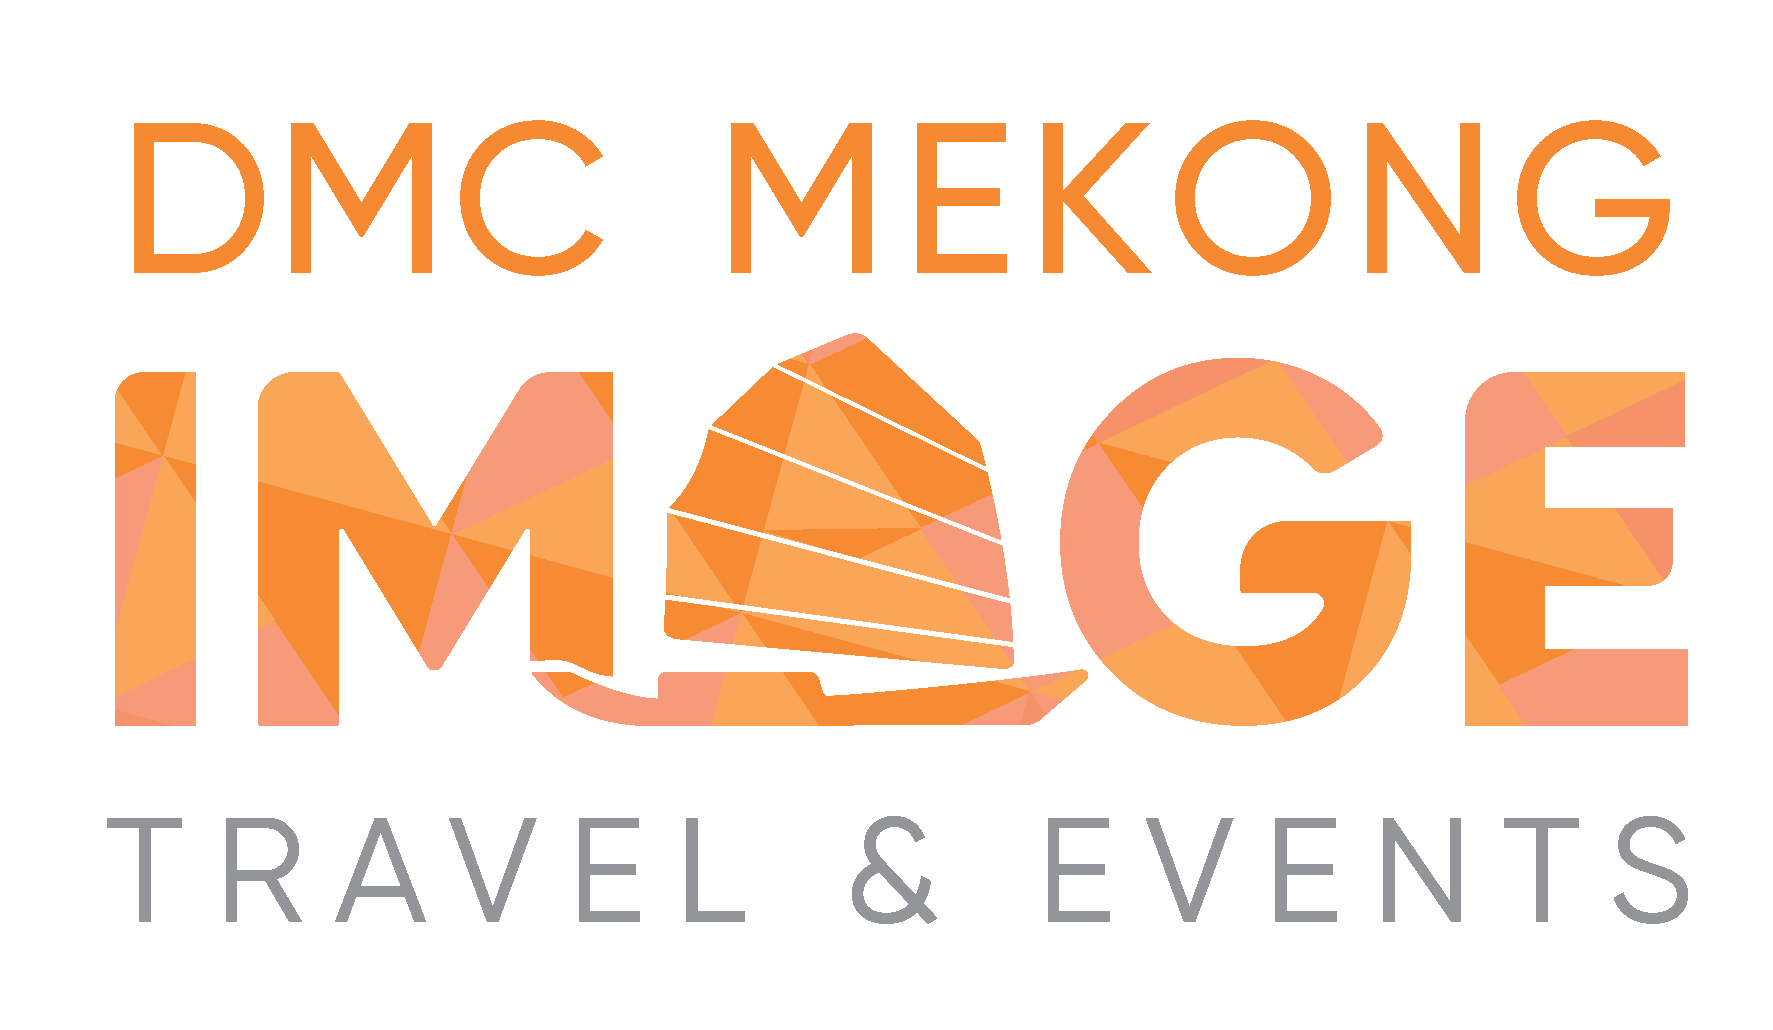 DMC in Vietnam Cambodia Laos – Image Travel & Events